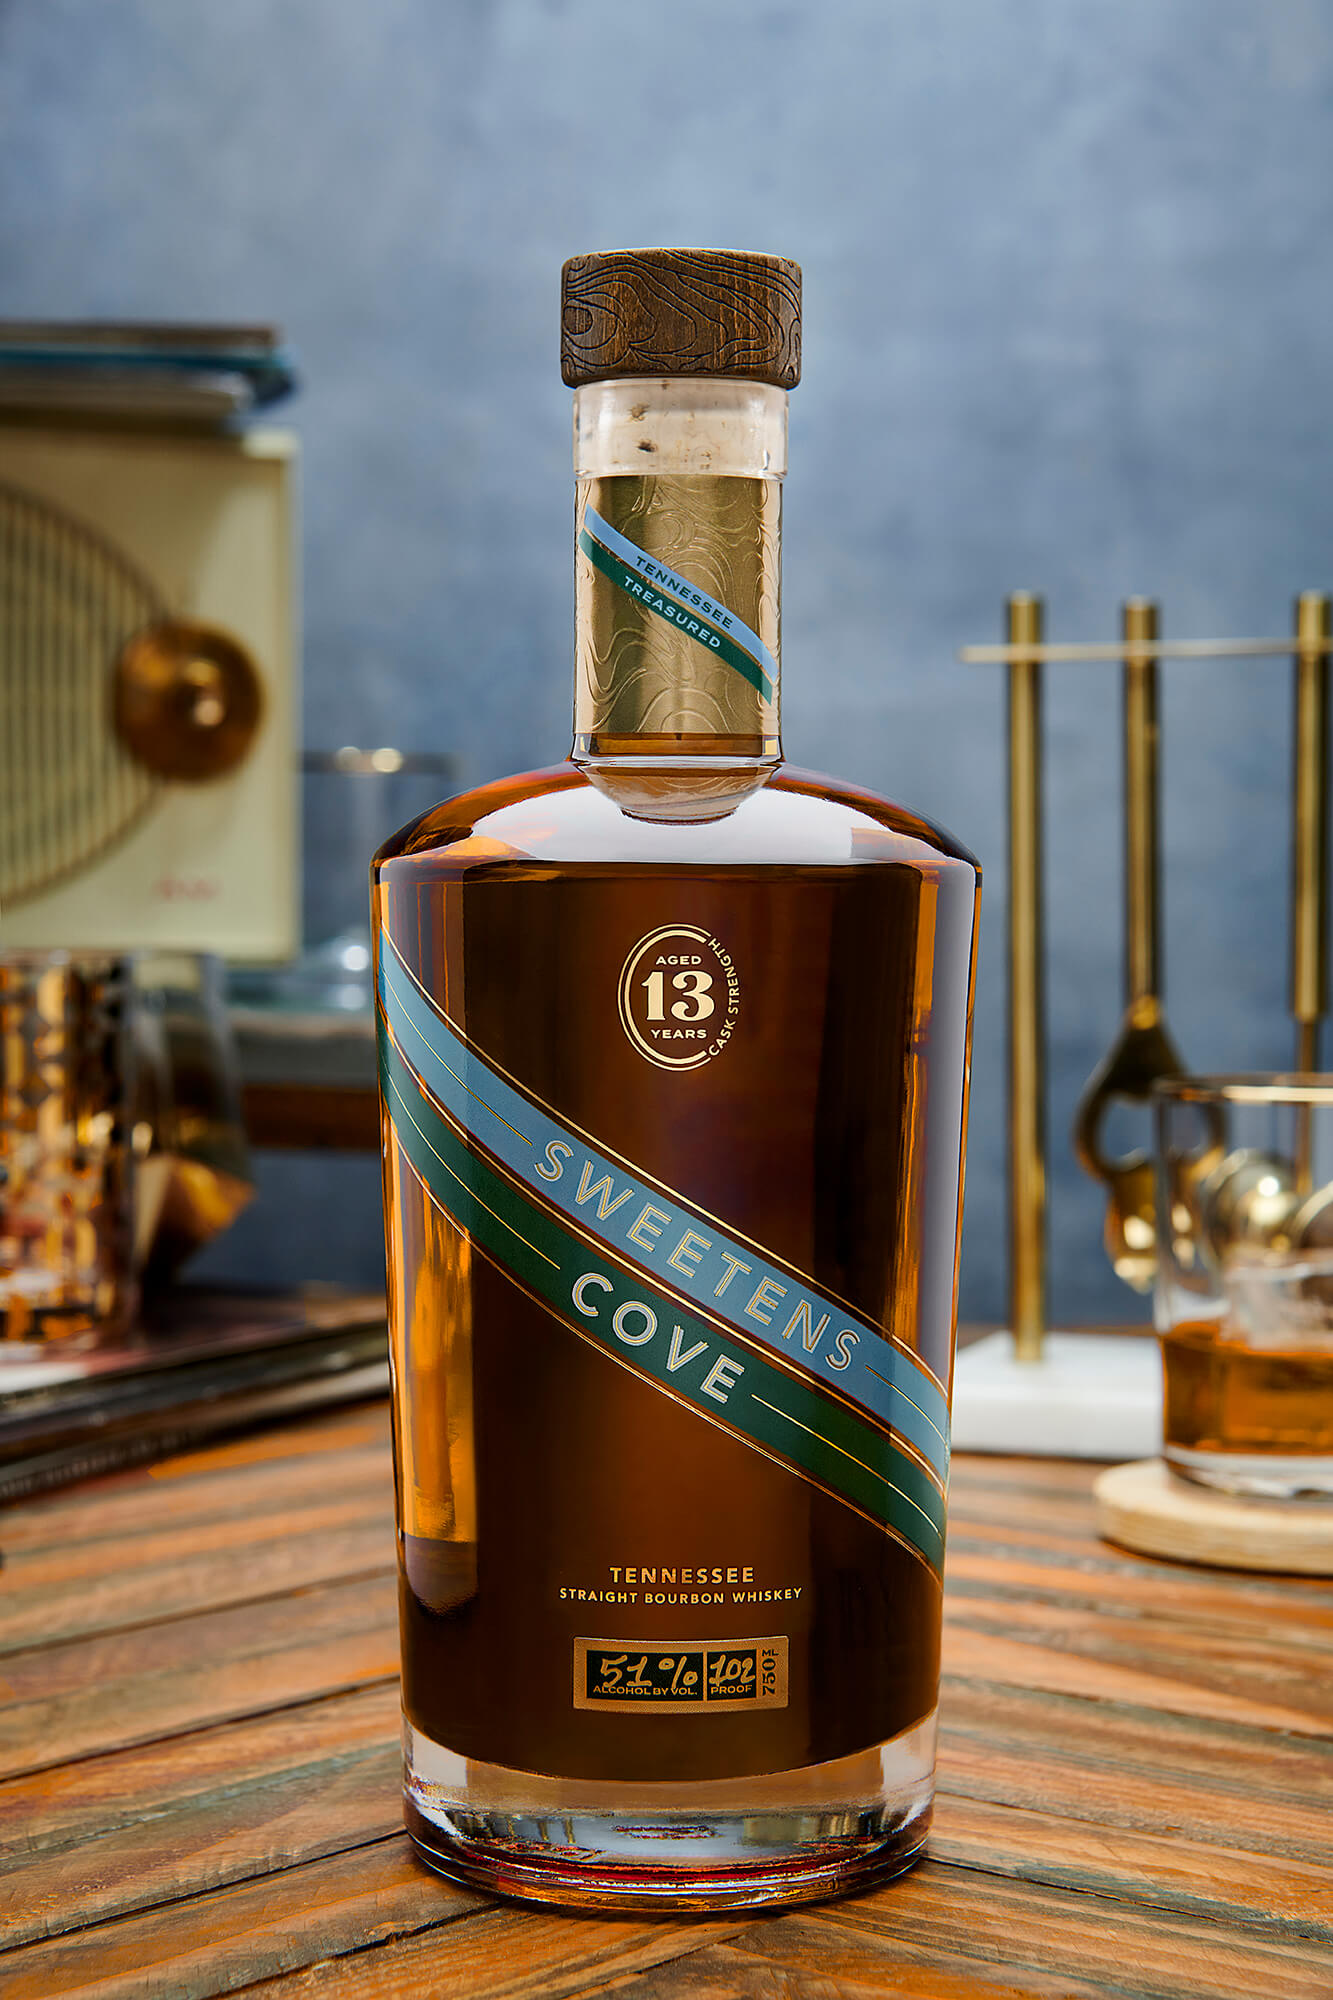 Sweetens Cove Bourbon Whiskey Bottle